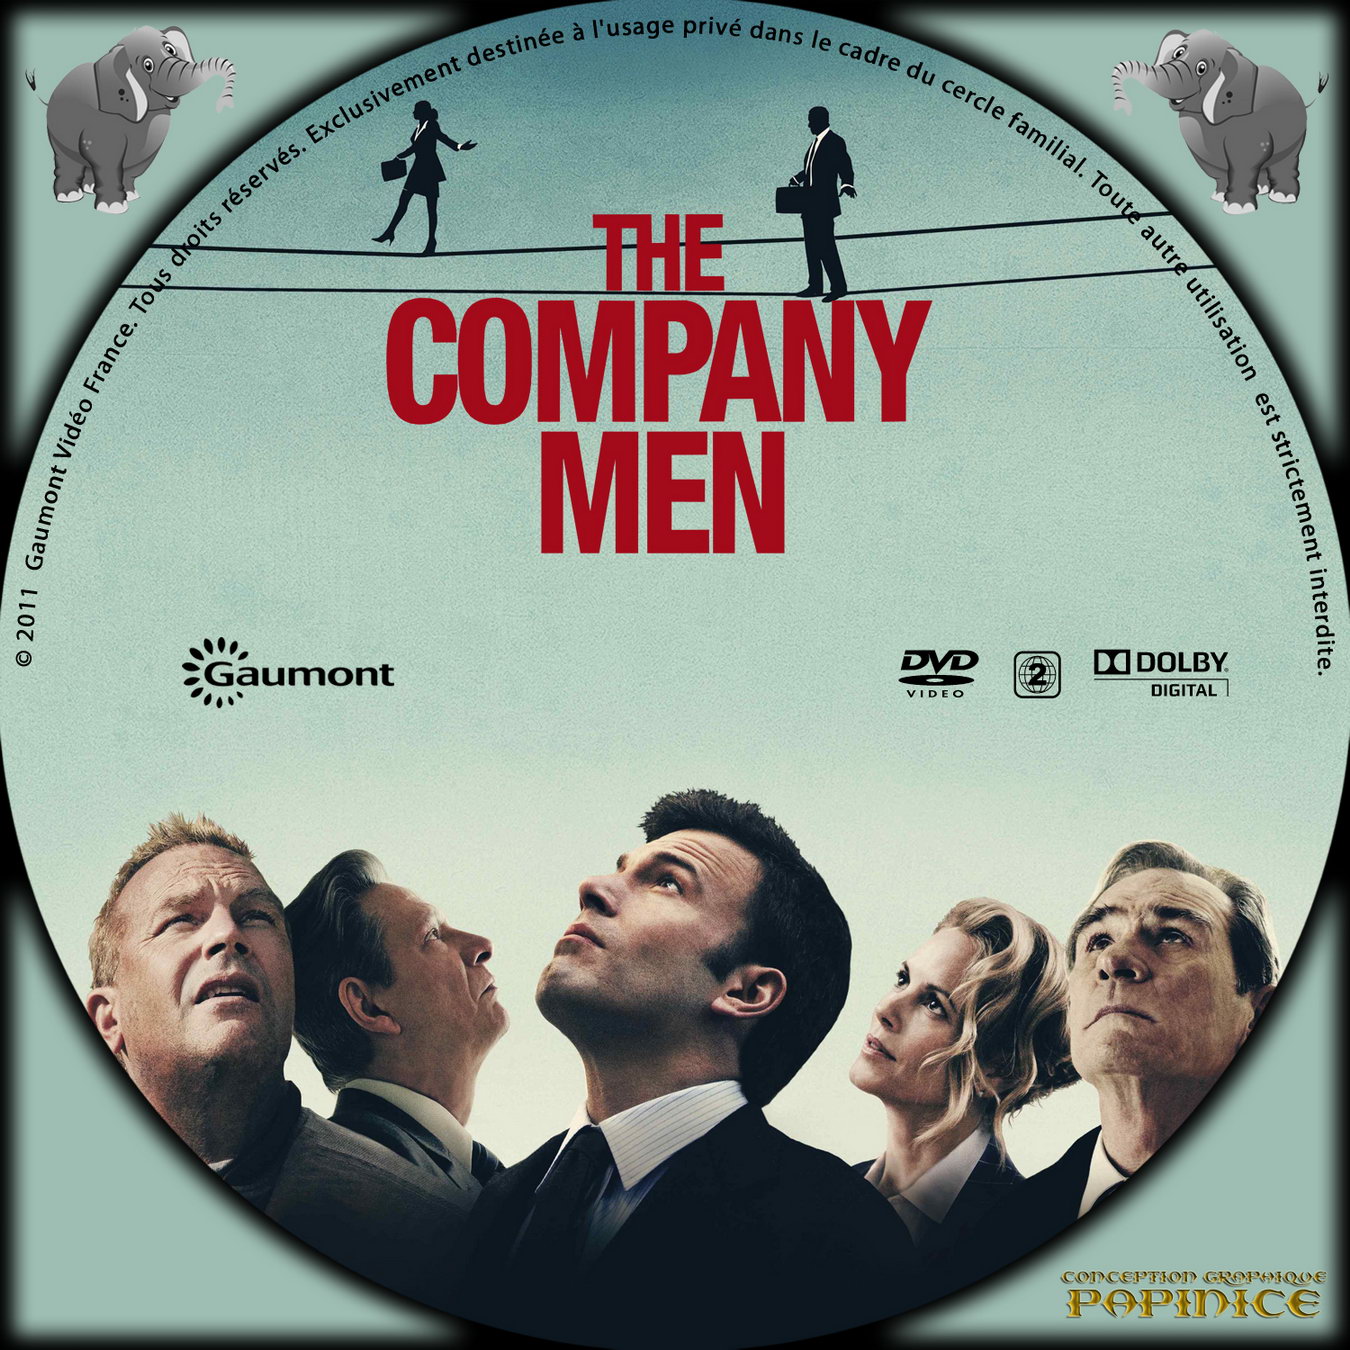 The company men custom